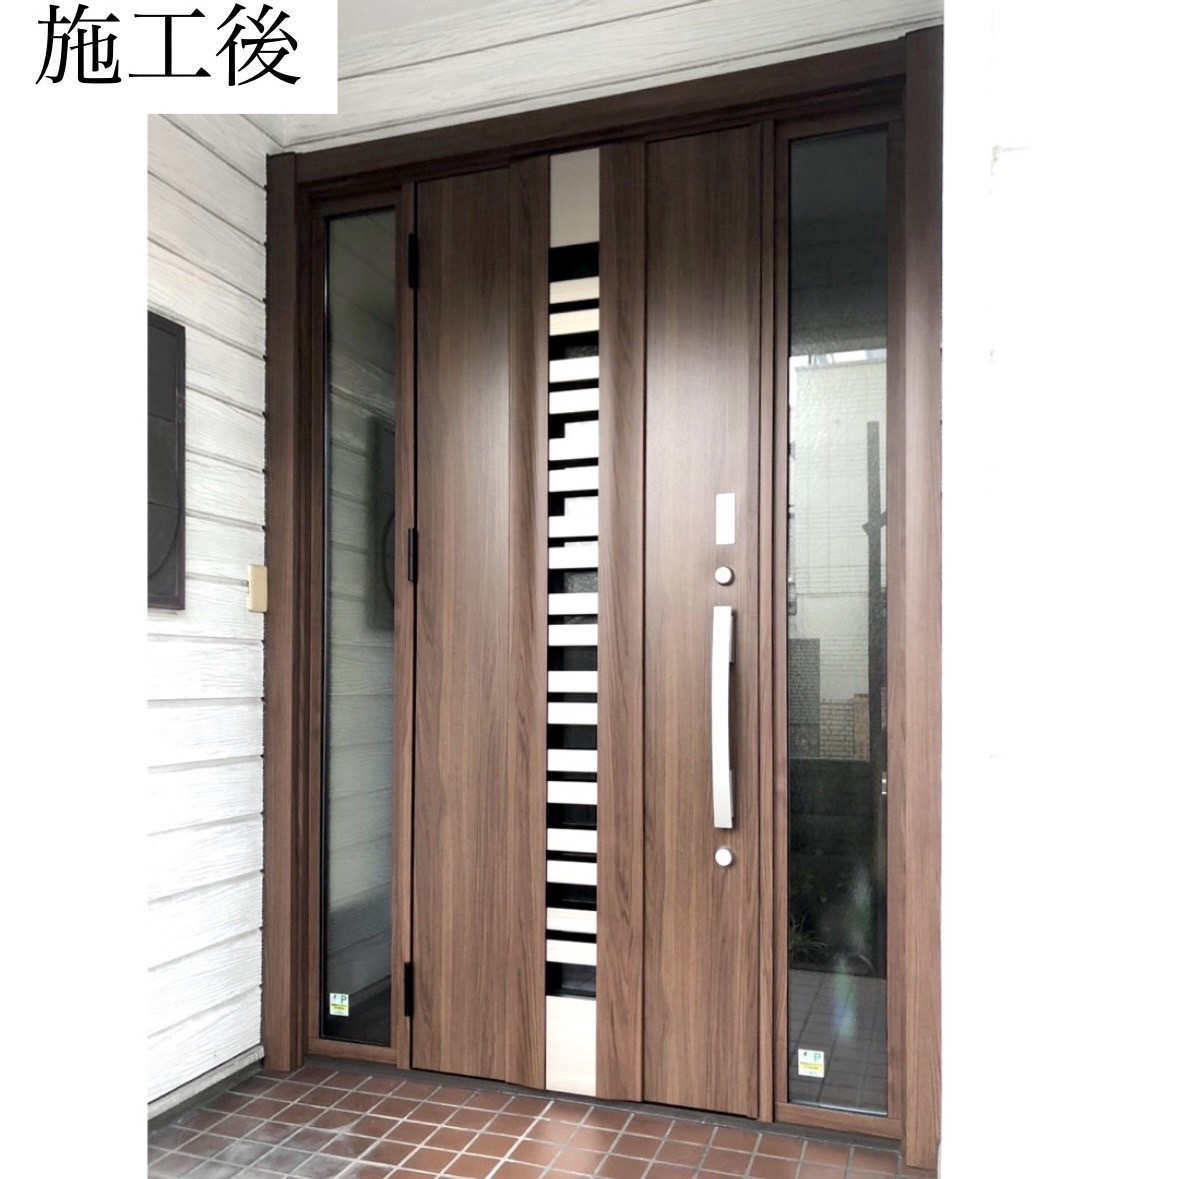 三輪ガラスの【刈谷市】引戸からドアに玄関リフォームしたい。の施工後の写真1